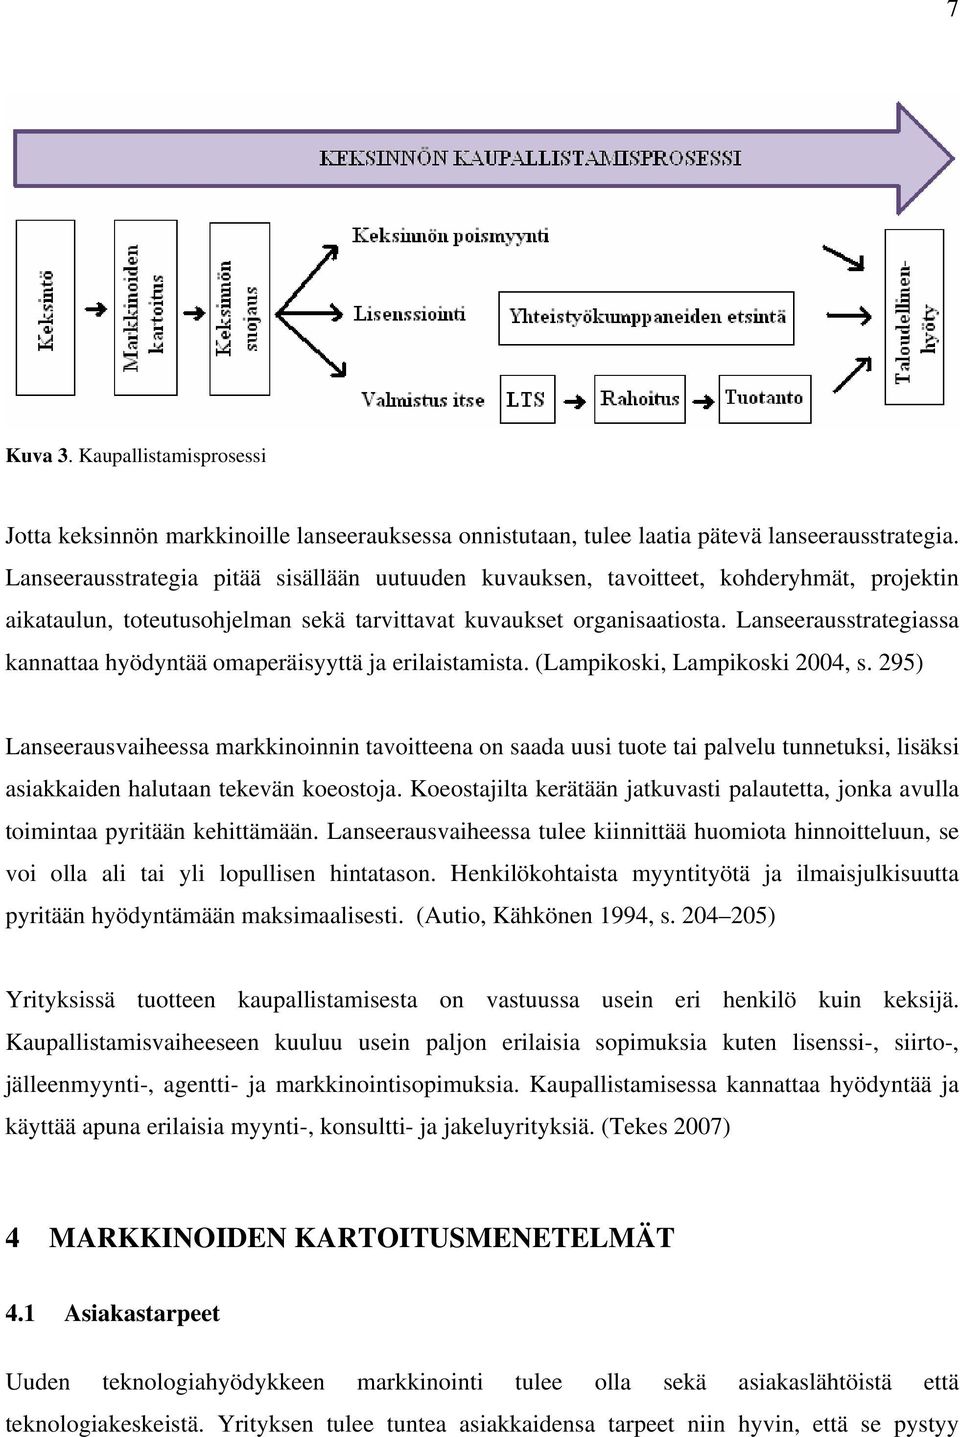 Lanseerausstrategiassa kannattaa hyödyntää omaperäisyyttä ja erilaistamista. (Lampikoski, Lampikoski 2004, s.